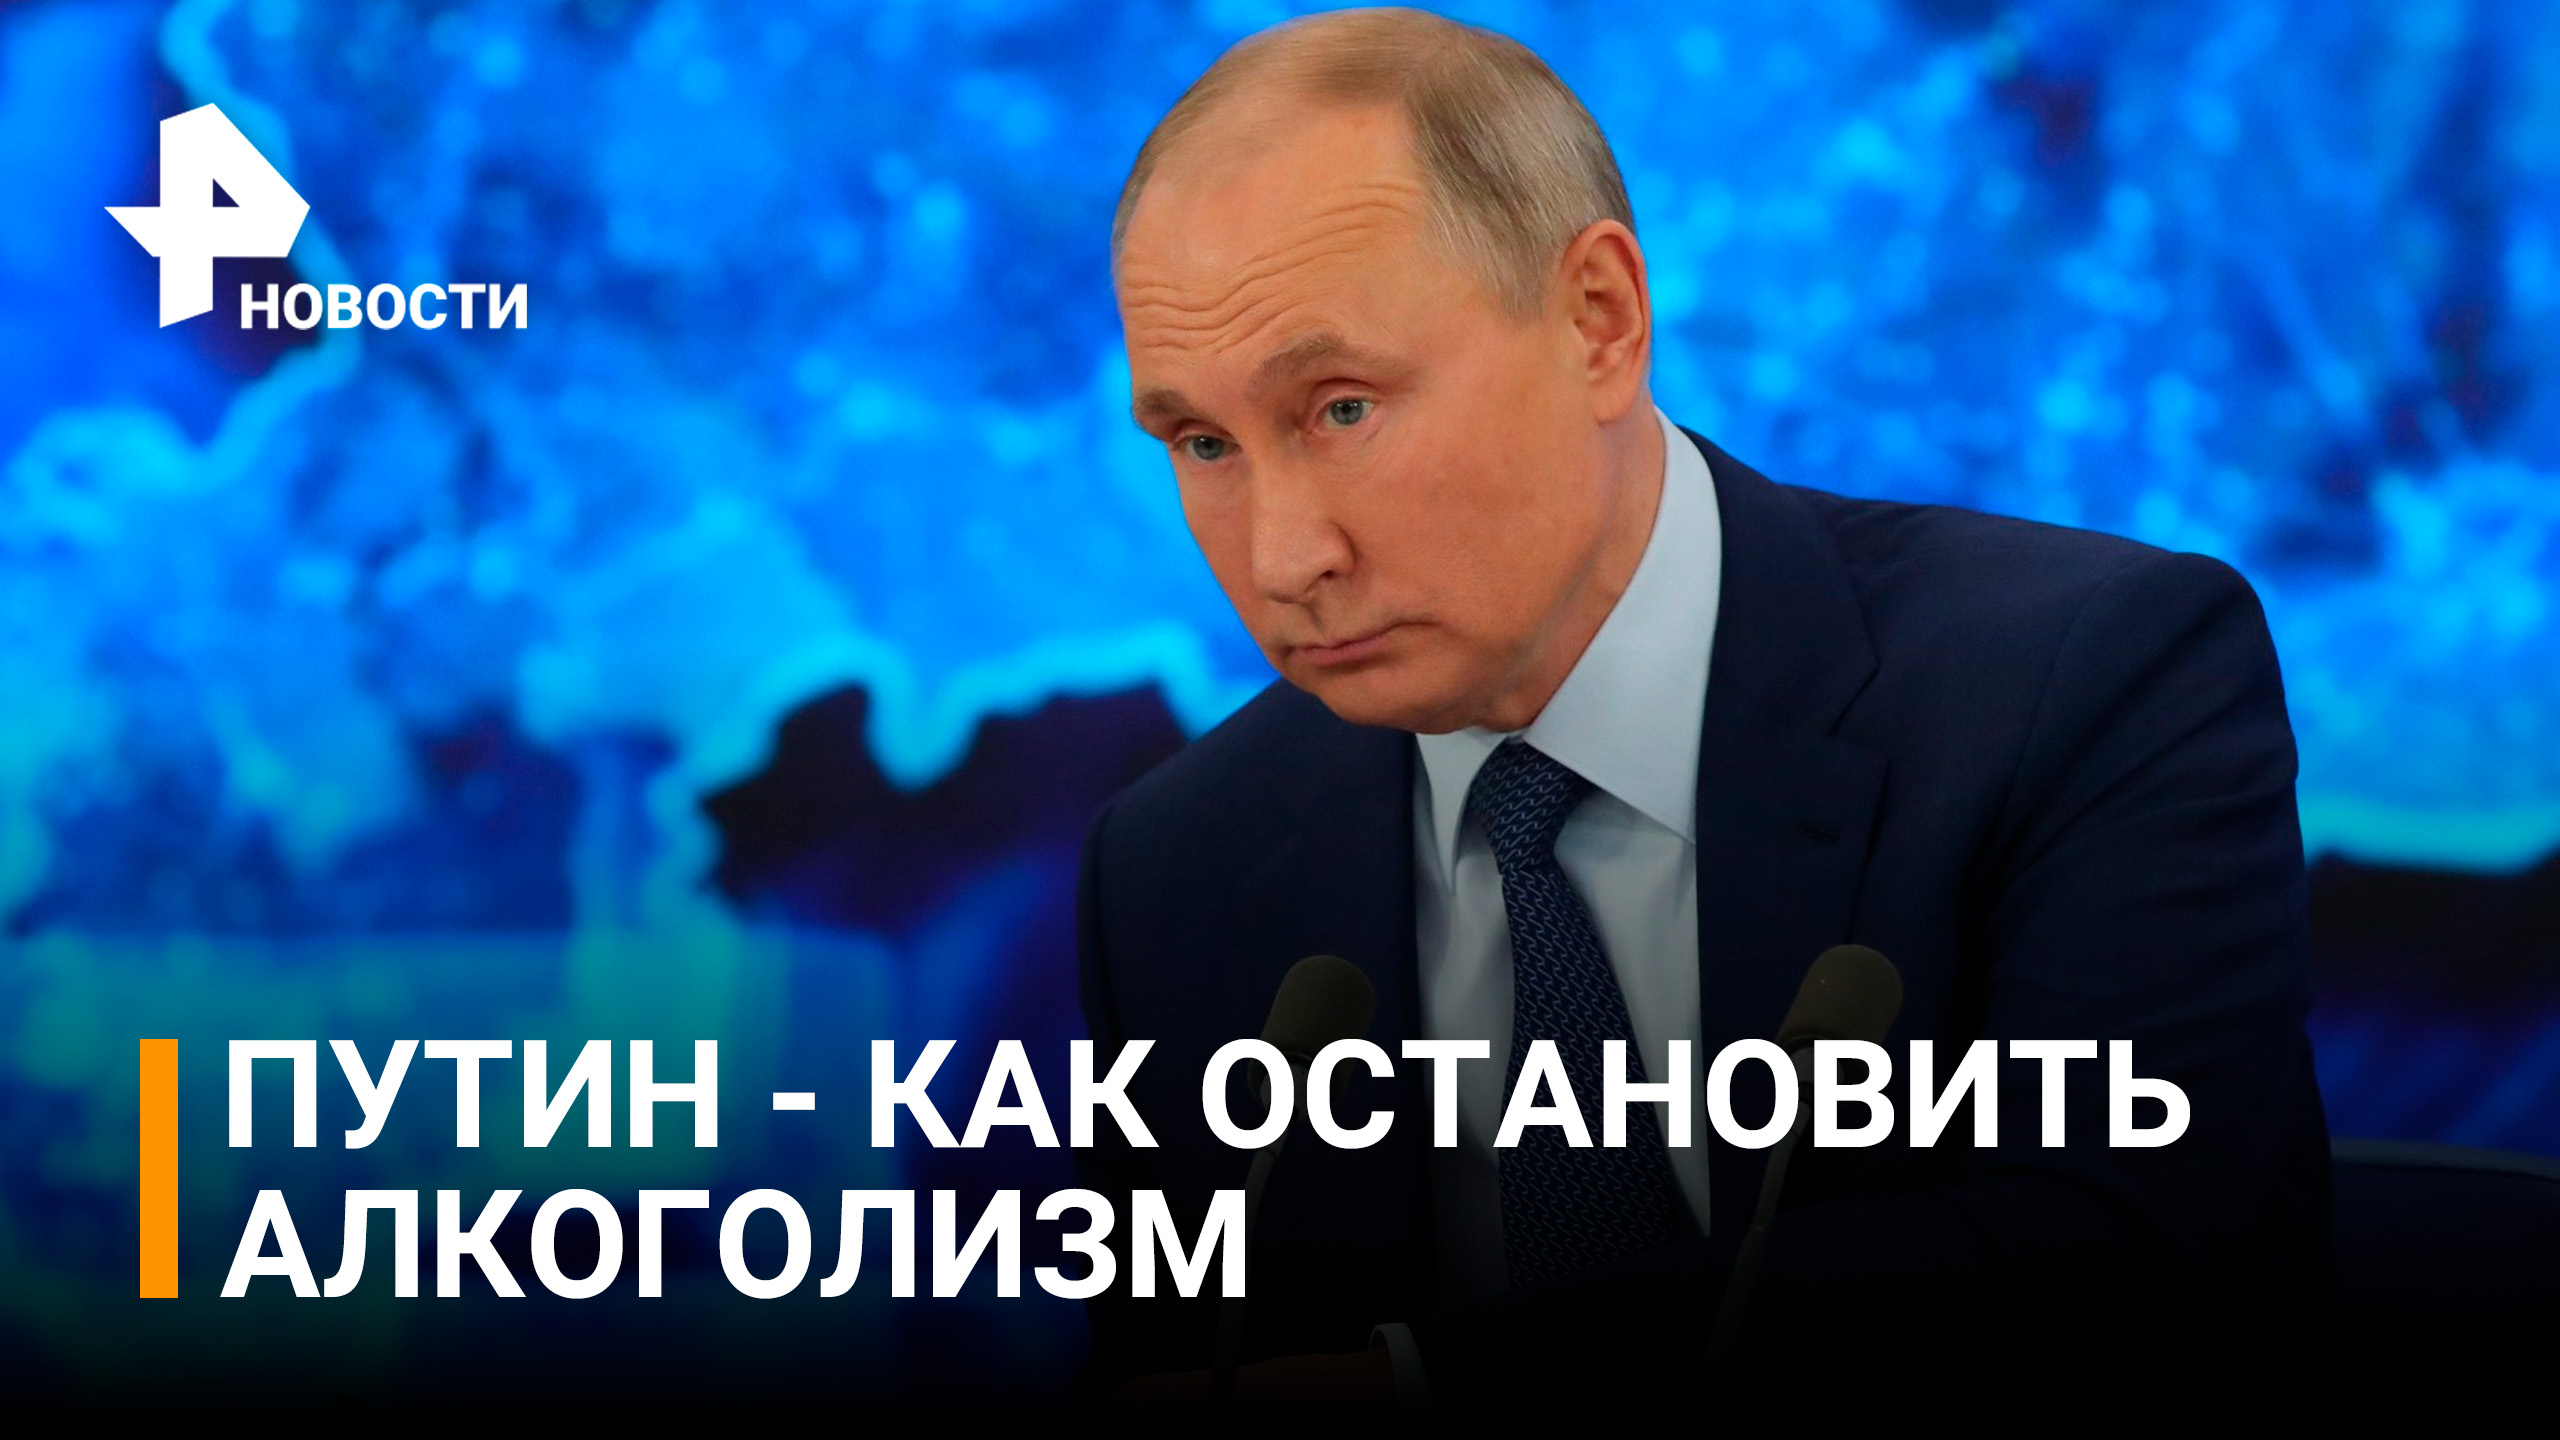 Путин про алкоголизм: нельзя считать, что "пьют мужики и дальше будут пить" / РЕН Новости